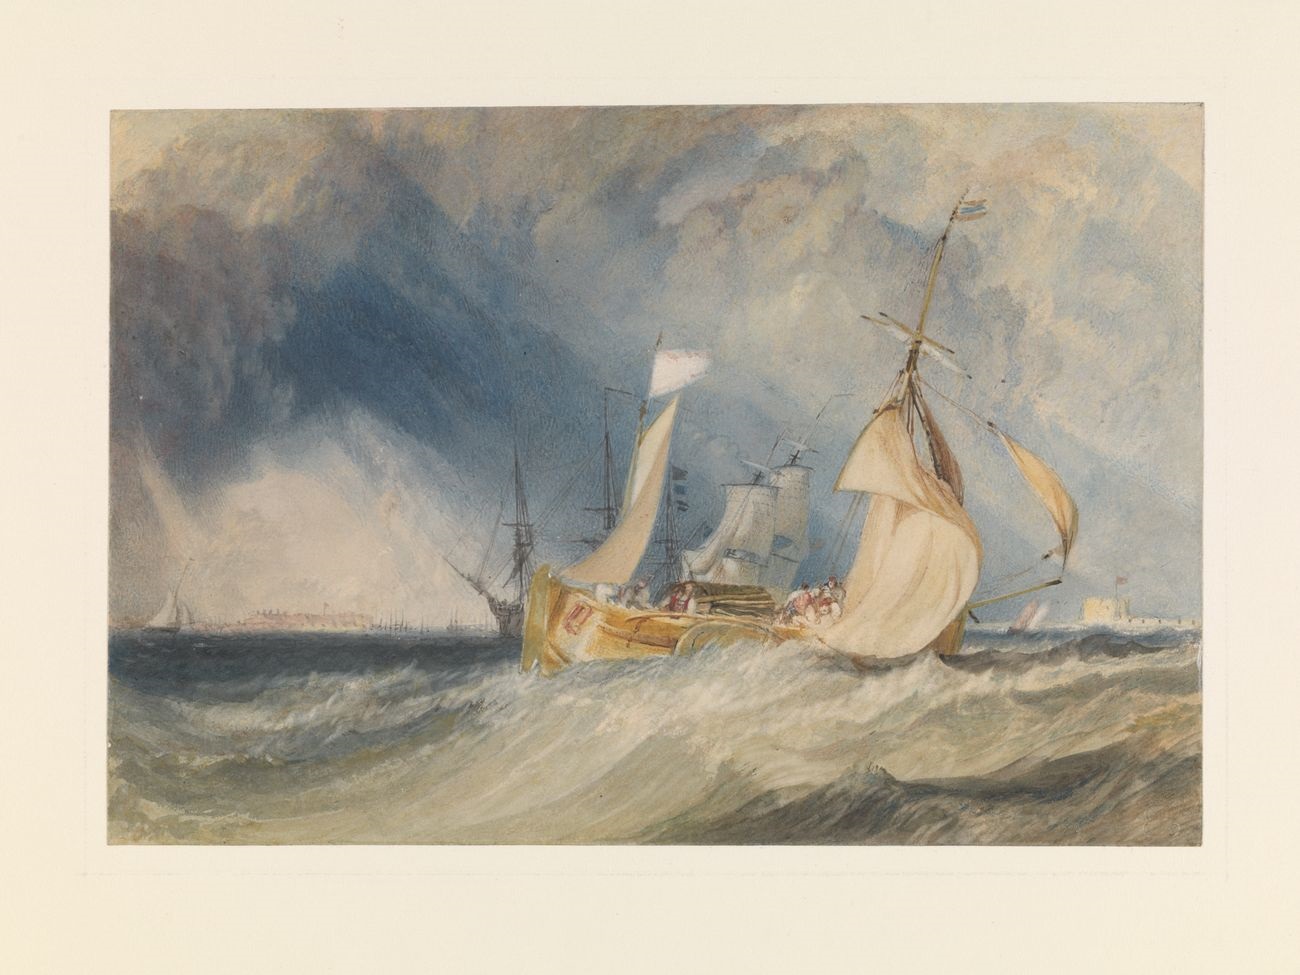 Joseph Mallord William Turner, Desembocadura del riu Humber (cap a 1824-5). Tate: Acceptat per la nació com a part del Llegat Turner 1856. Foto Tate